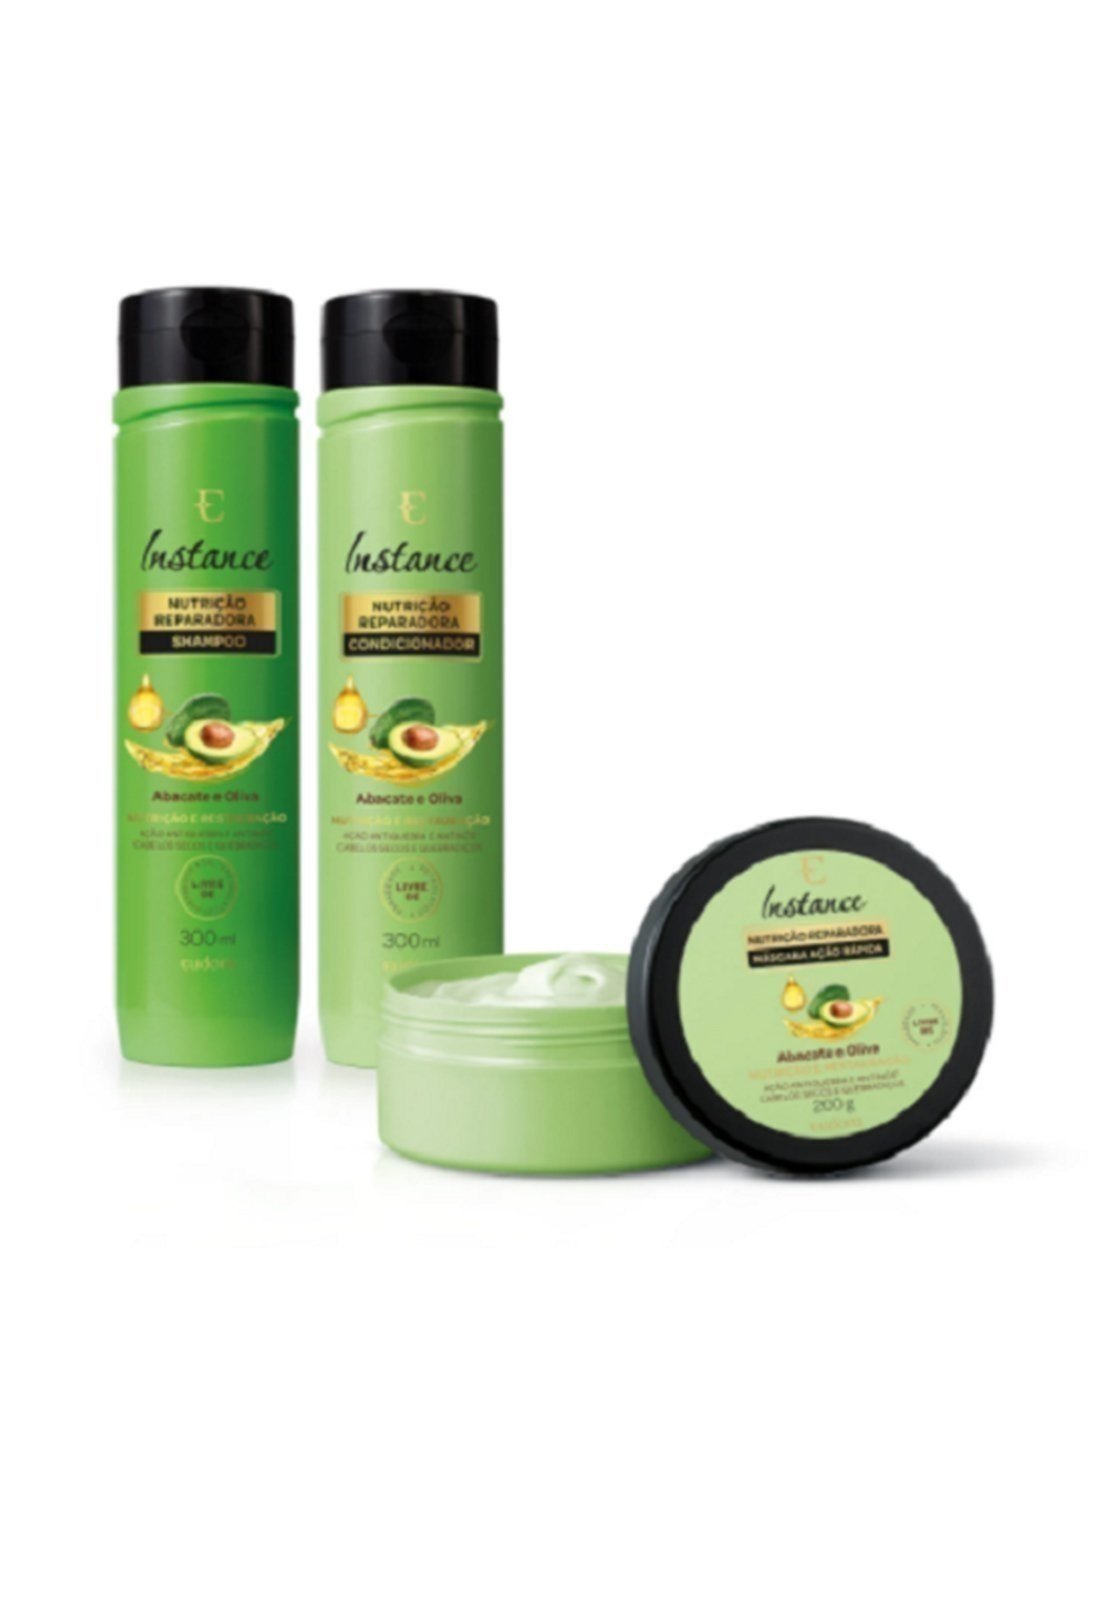 Combo Instance Abacate e Oliva Eudora: Shampoo 300ml + Condicionador 300ml + Máscara Capilar 200g